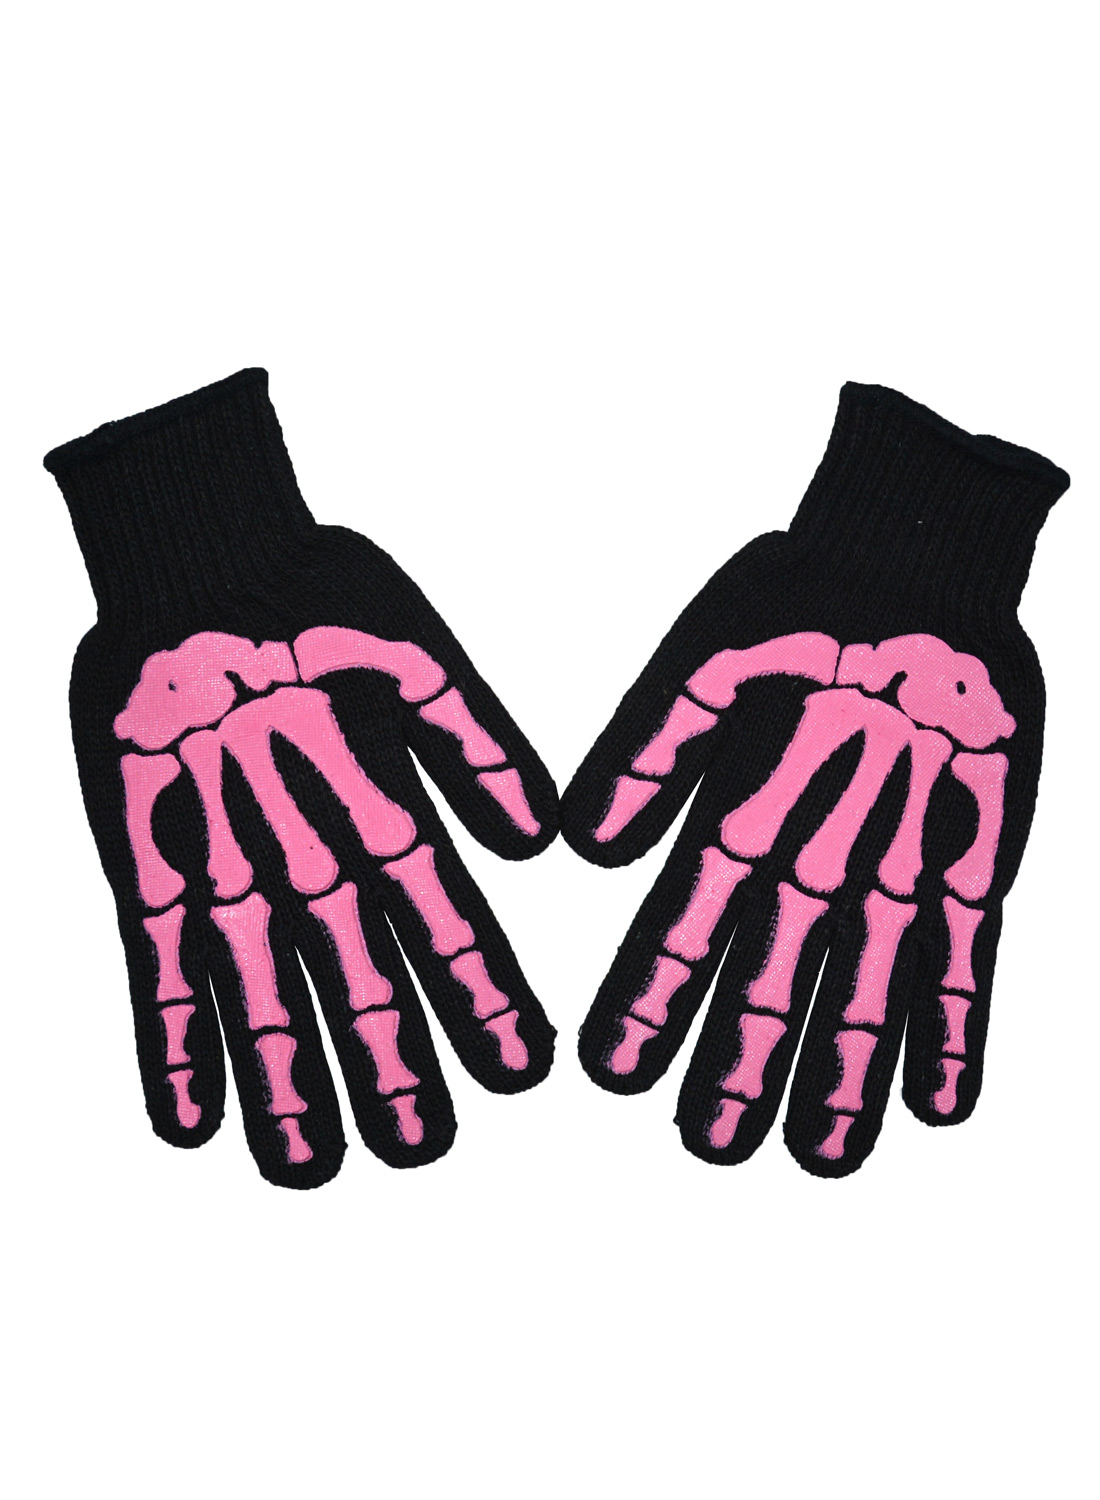 Pink Misfit Knit Gloves